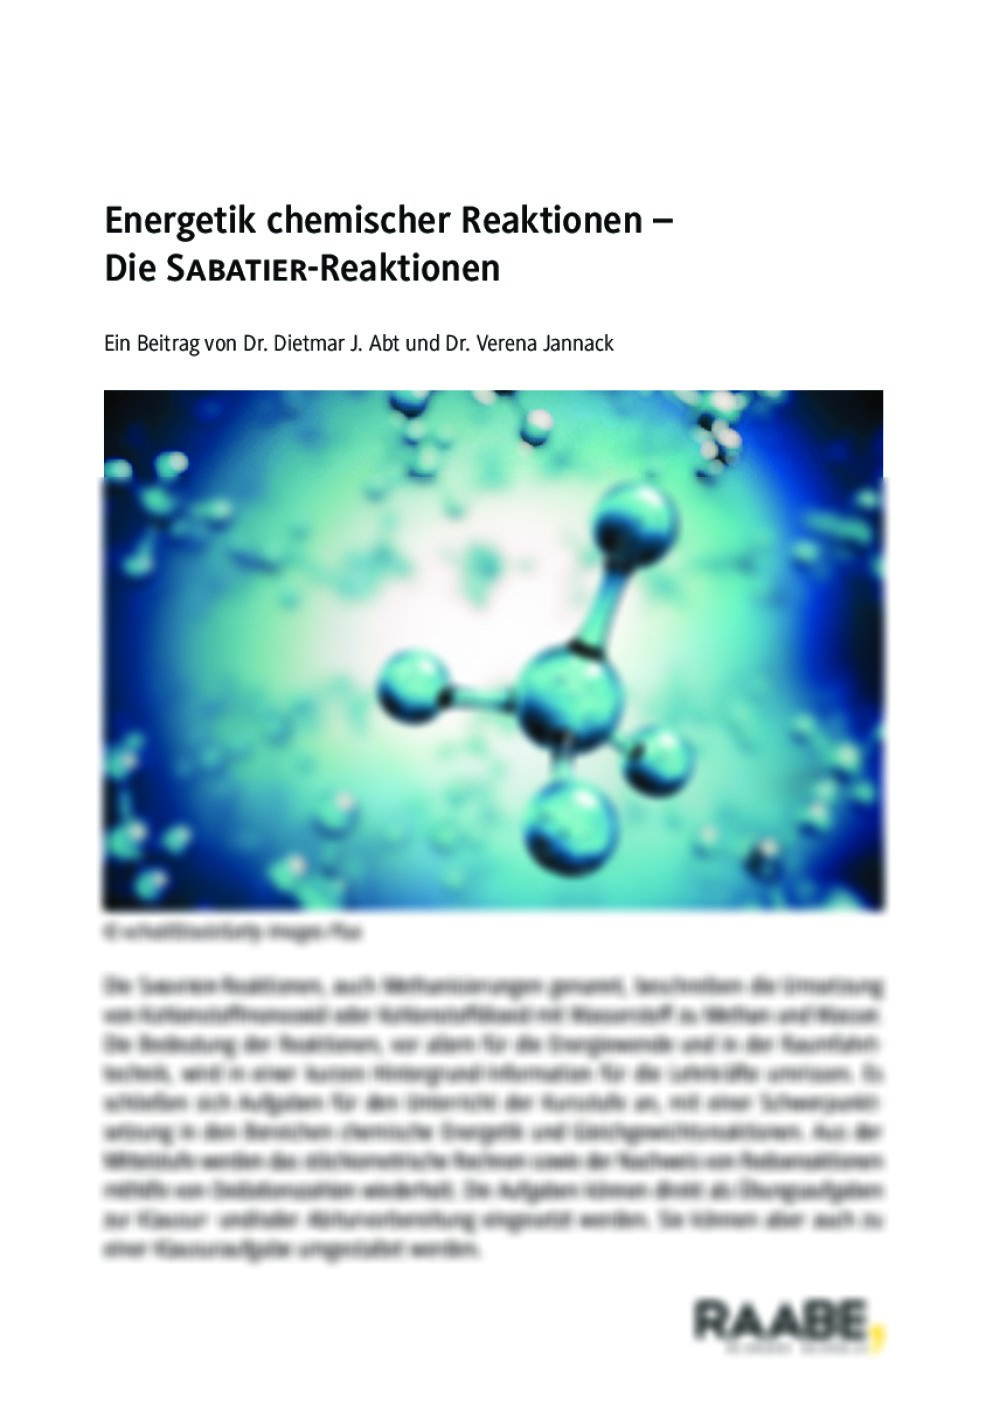 Die SABATIER-Reaktionen – Energetik chemischer Reaktionen - Seite 1